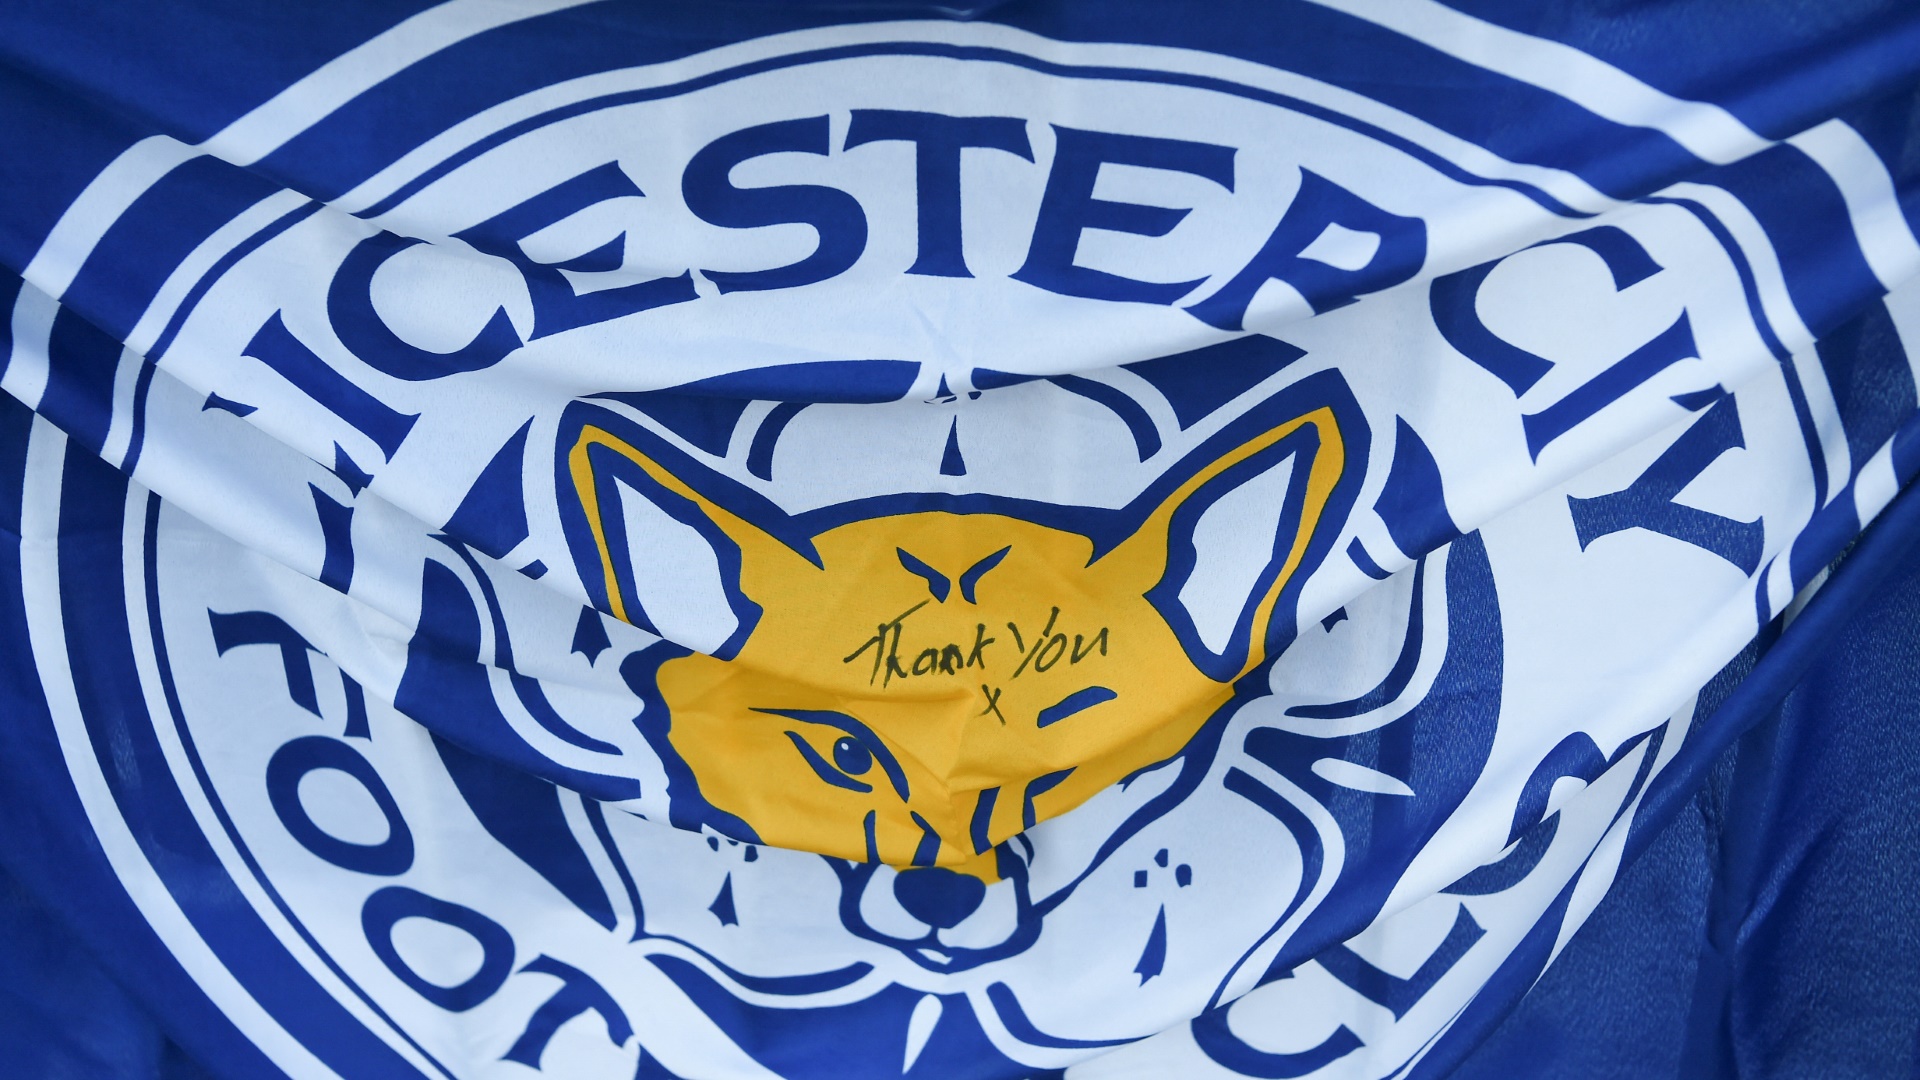 Leicester City wehrt sich gegen die Vorwürfe